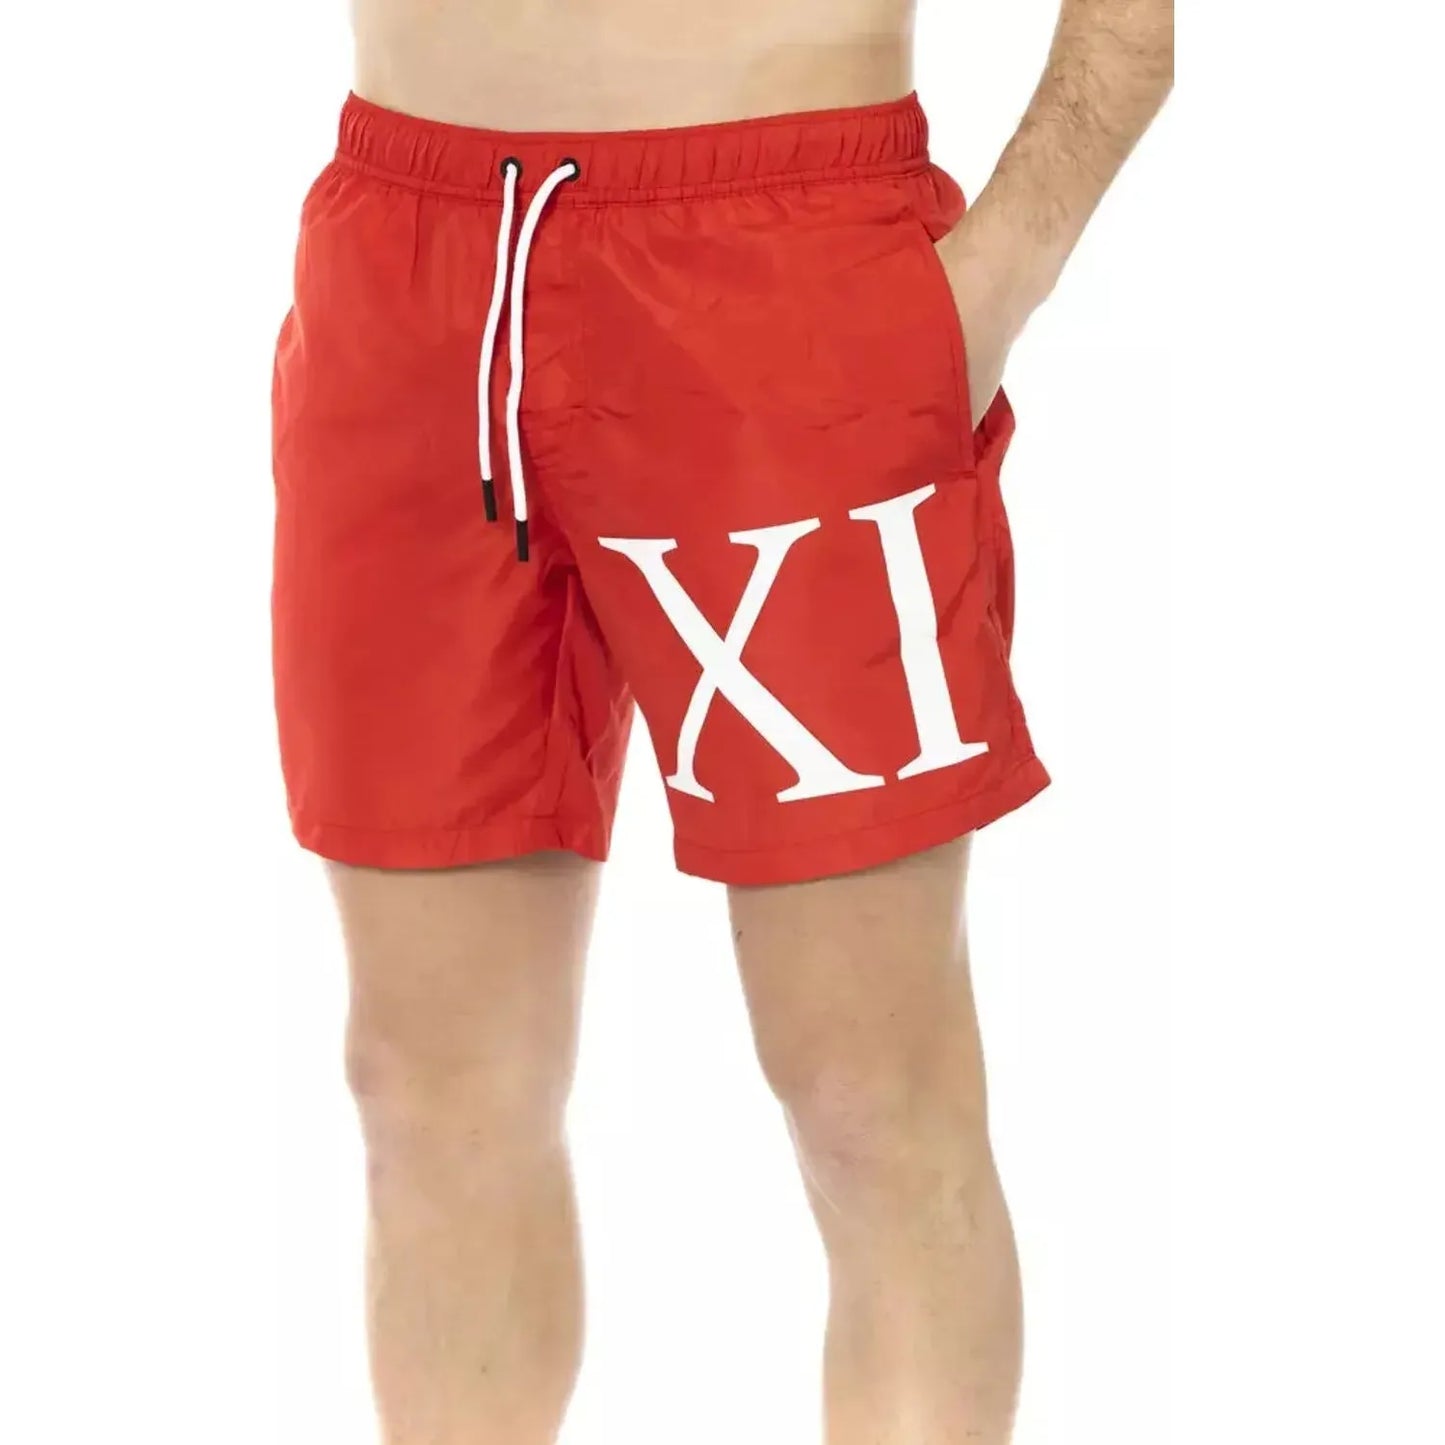 Bikkembergs Swim Shorts With Degredé Print For Men red-polyester-swimwear-6